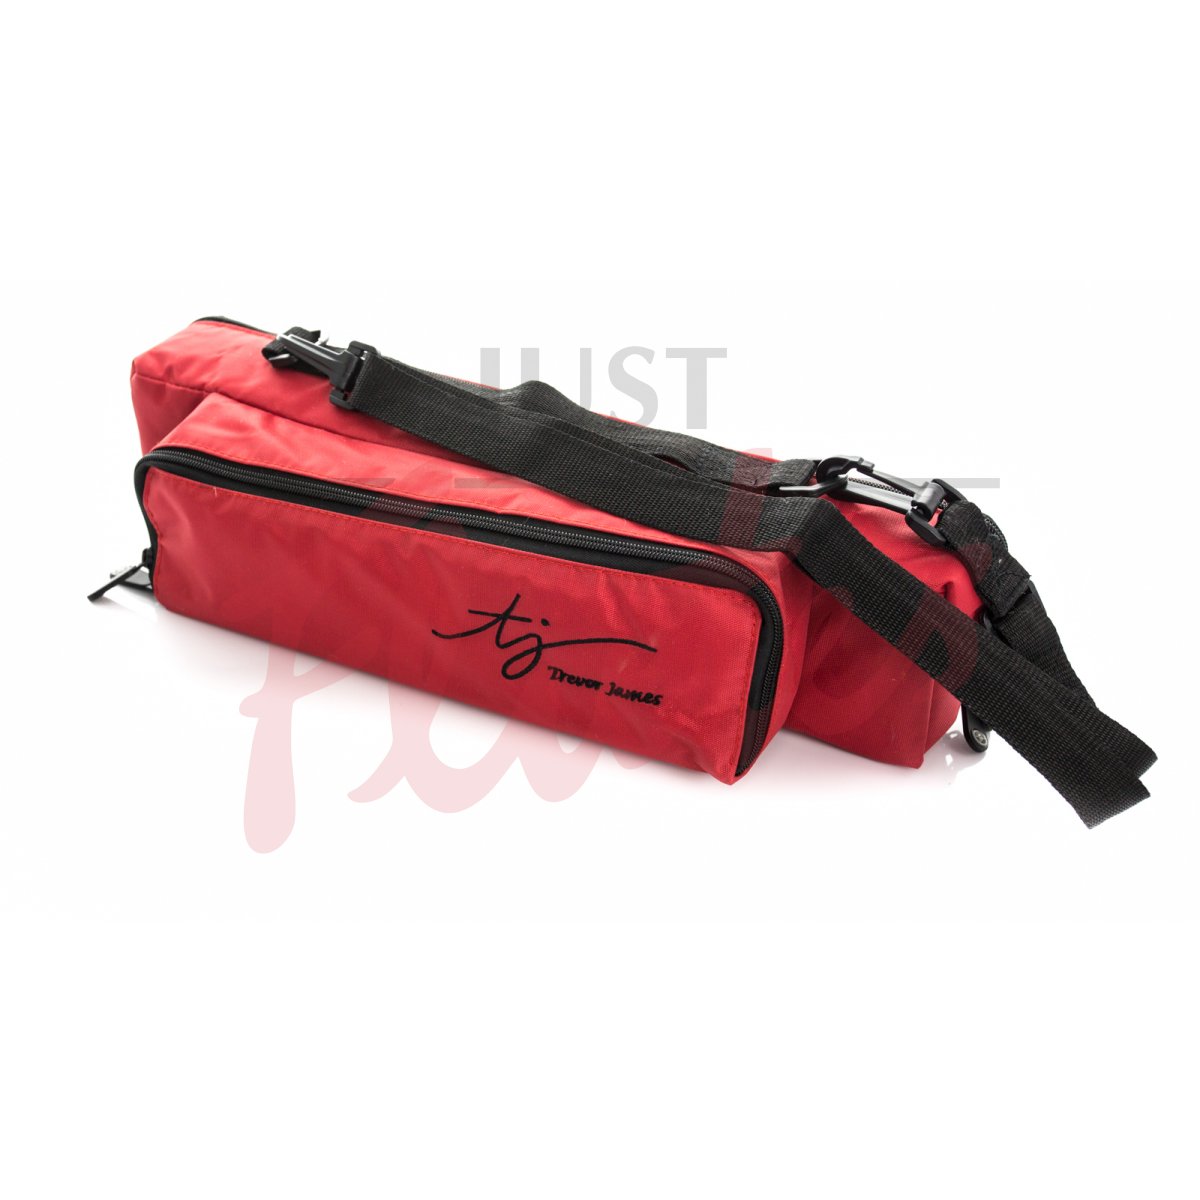 Trevor James 3509RD Flute and Piccolo Piggyback Shoulder Bag Case Cover, Red